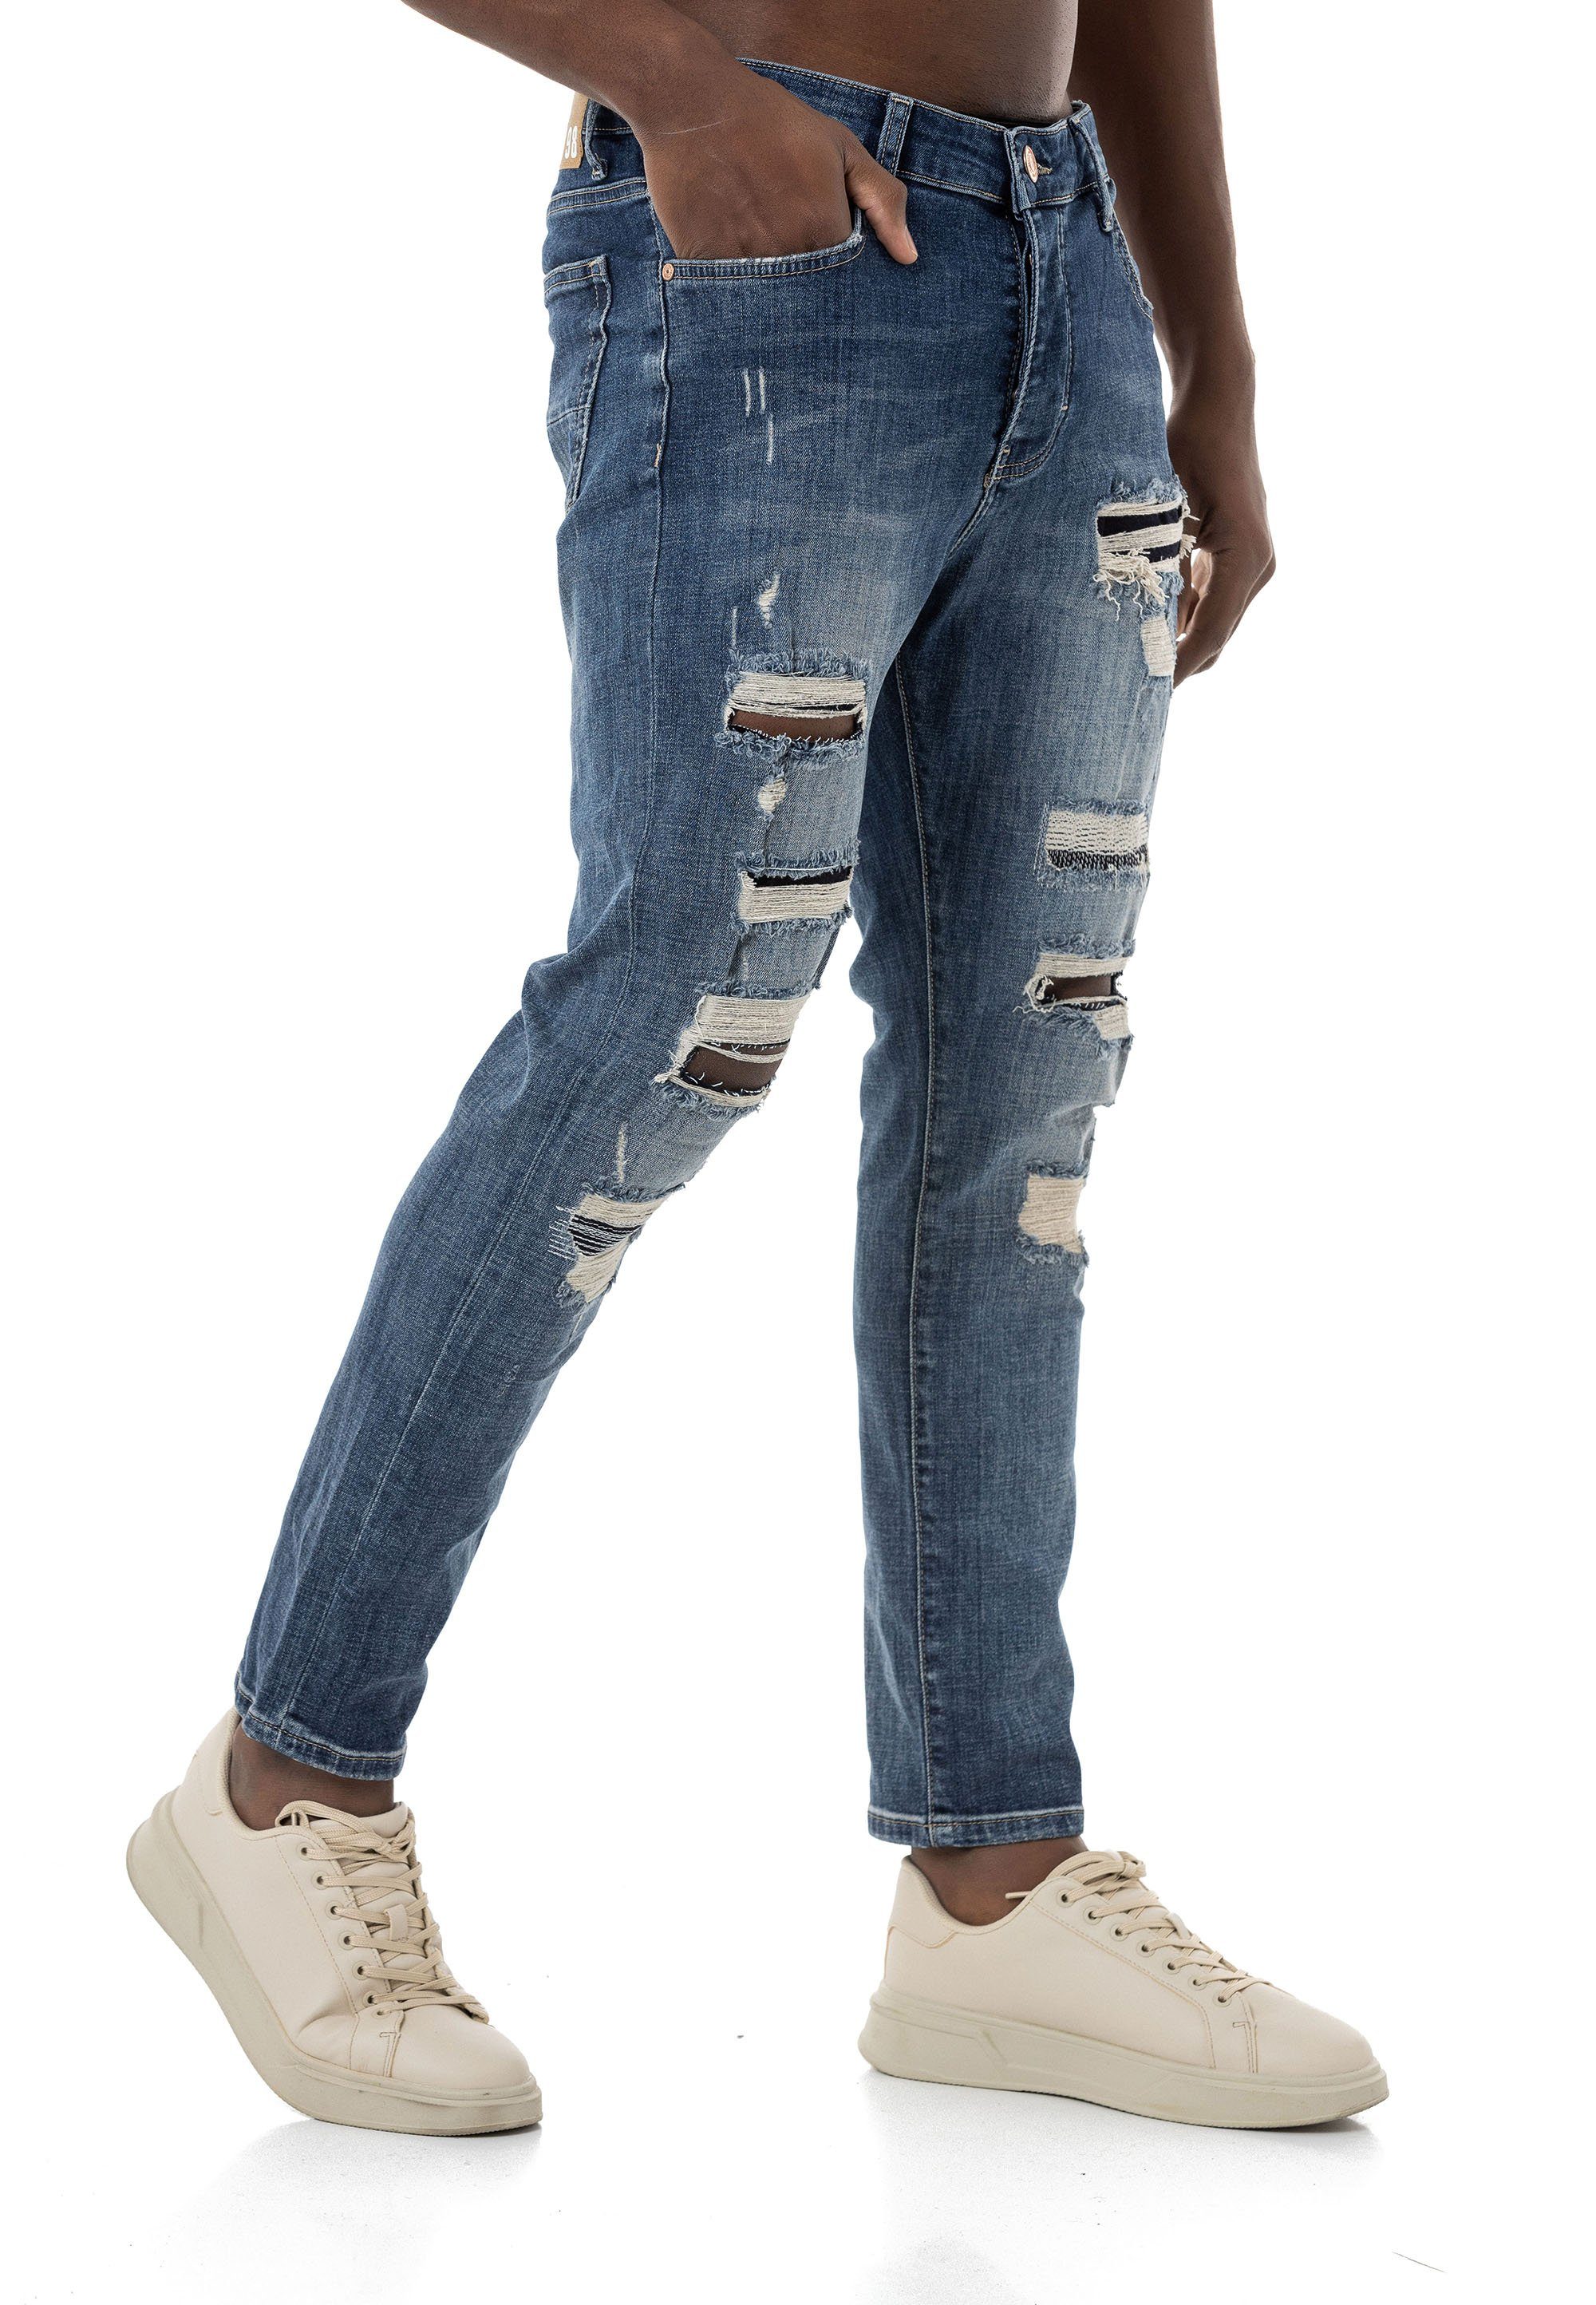 RedBridge Destroyed-Jeans lässige Denim Hose 5-Pocket-Style